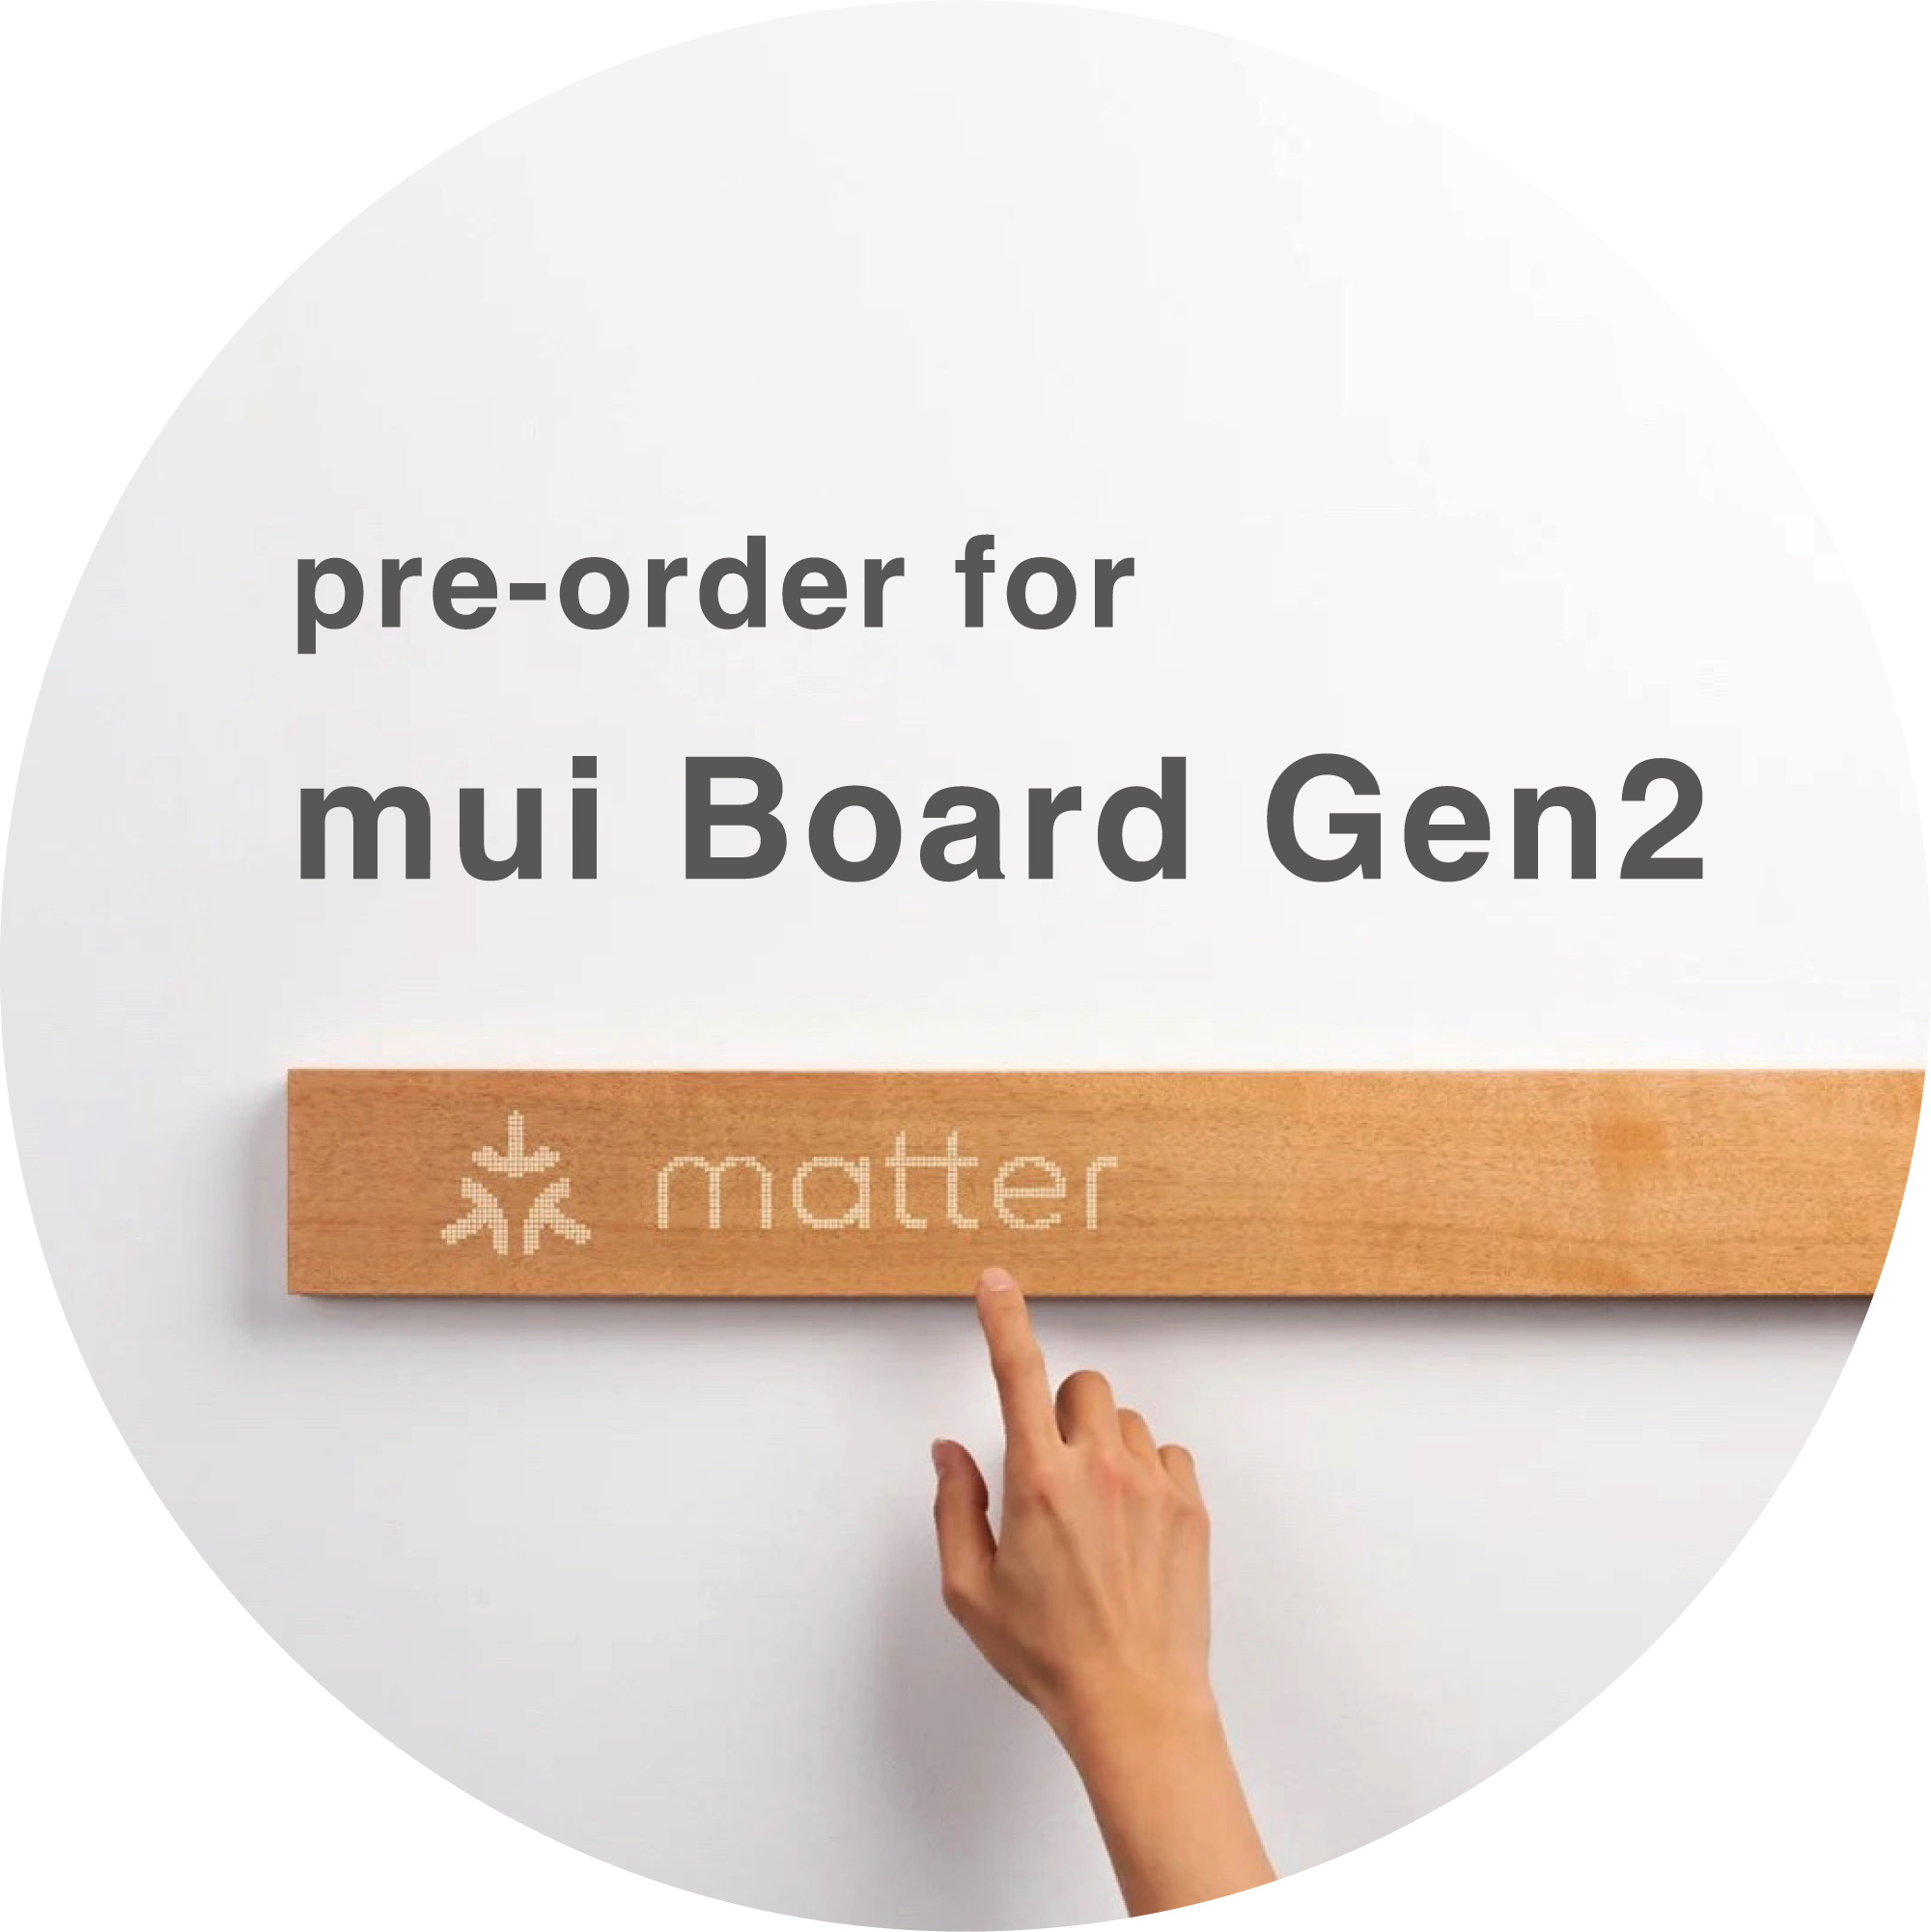 202301_mui board 2nd gen